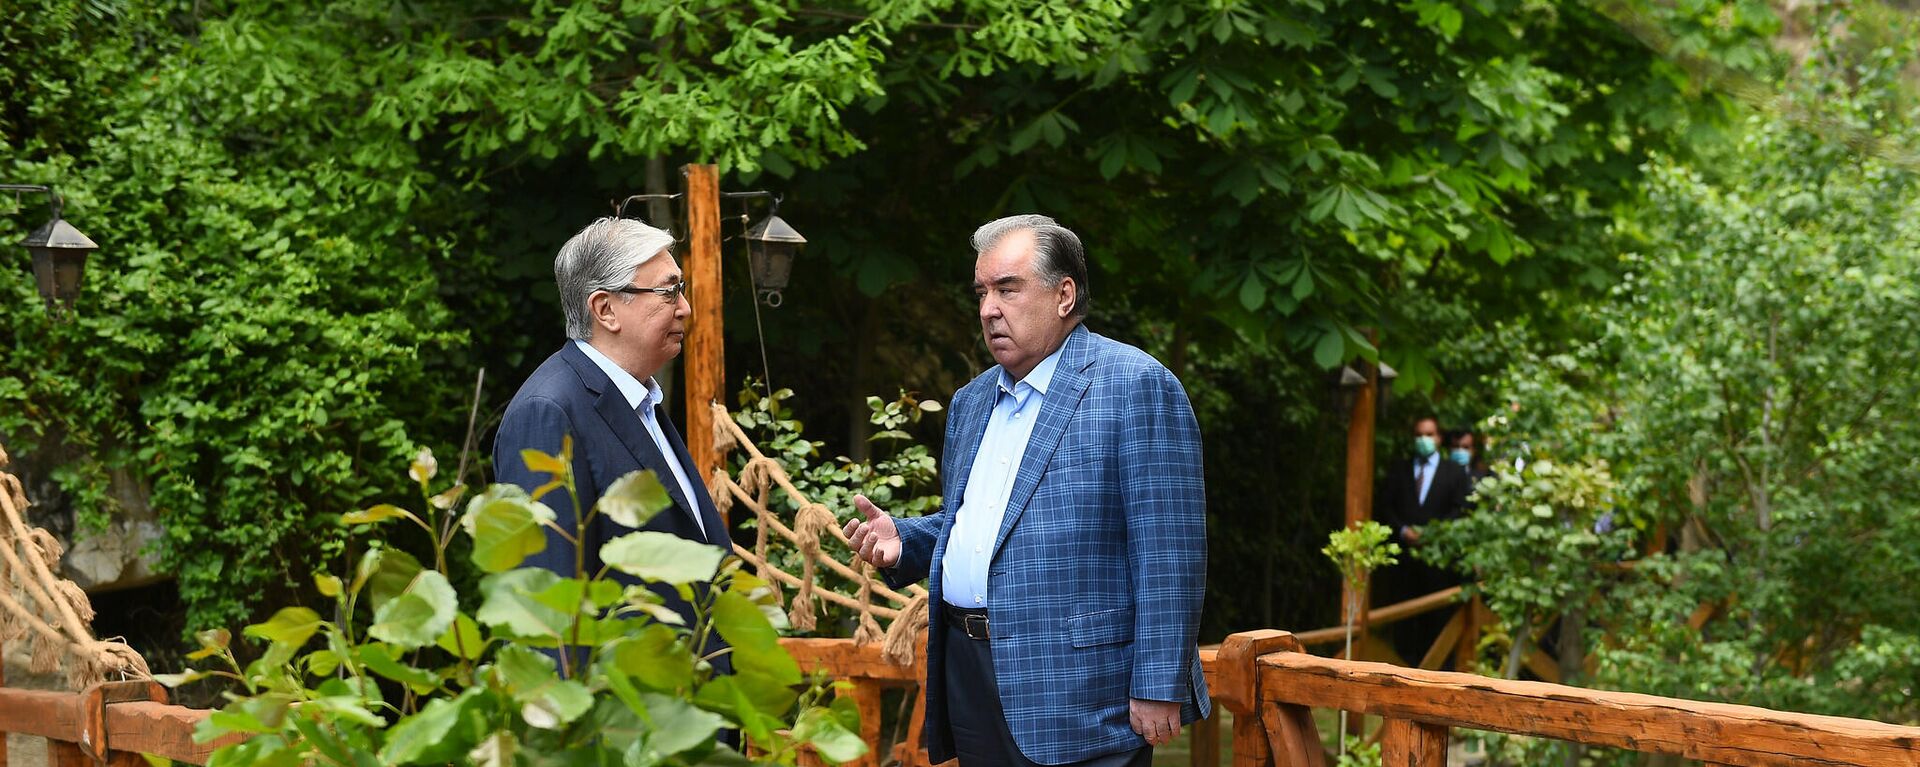 Неформальная встреча Рахмона и Токаева  - Sputnik Таджикистан, 1920, 20.05.2021